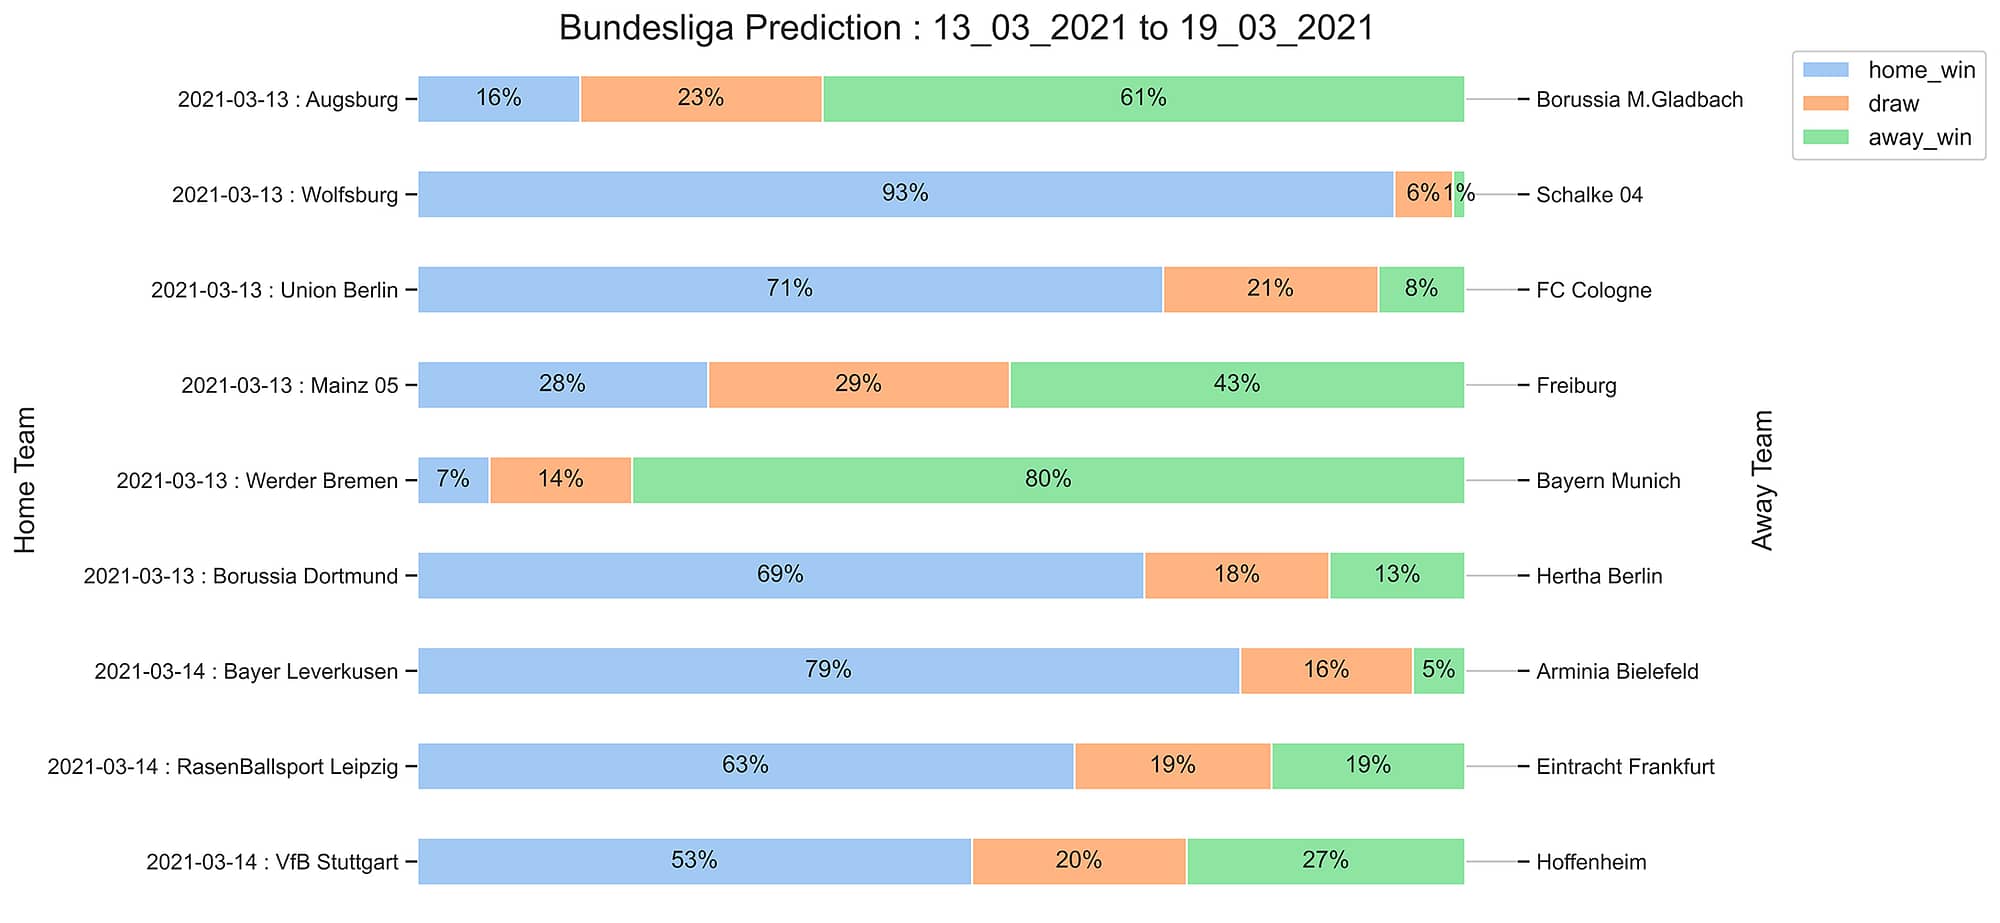 Bundesliga_Prediction 13_03_2021